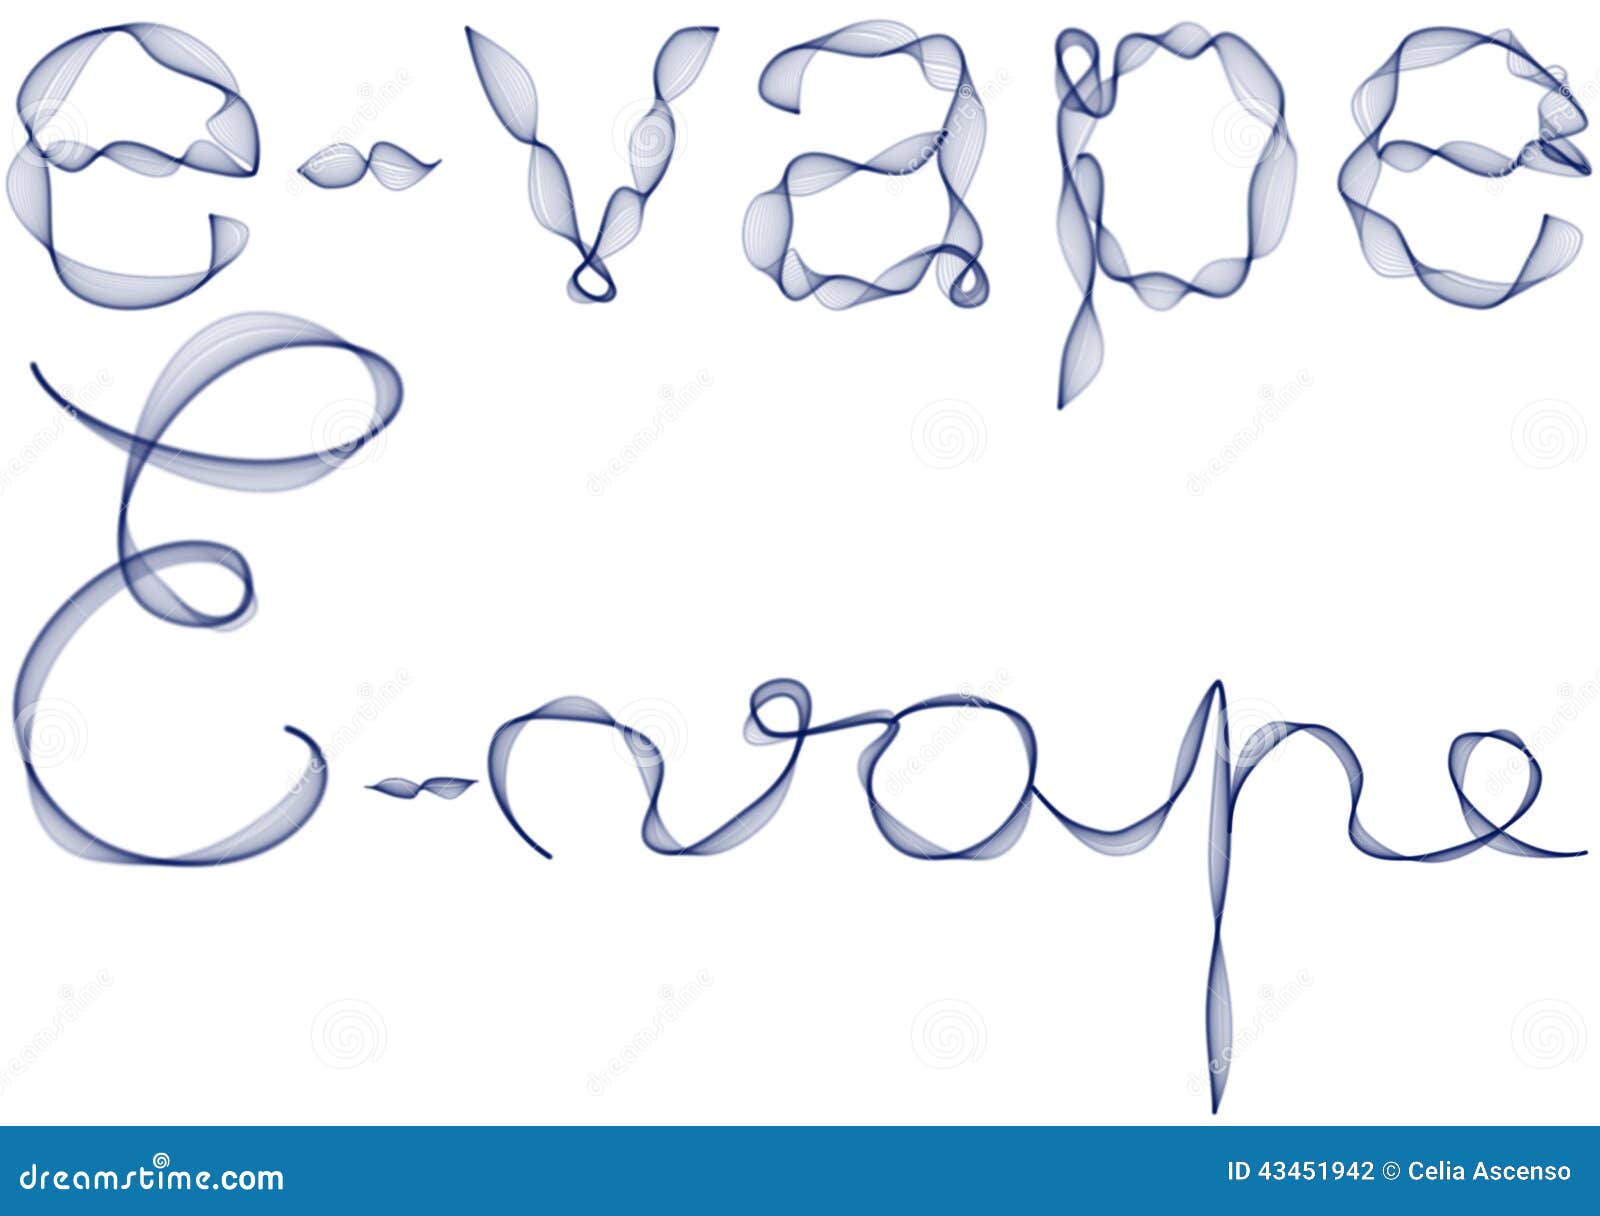 E-vape ord i blåttrök. Uppsättningen av bokstäver som stavar e-vapeordet som använder blått, röker Typhandstil- och handhandstilexempel